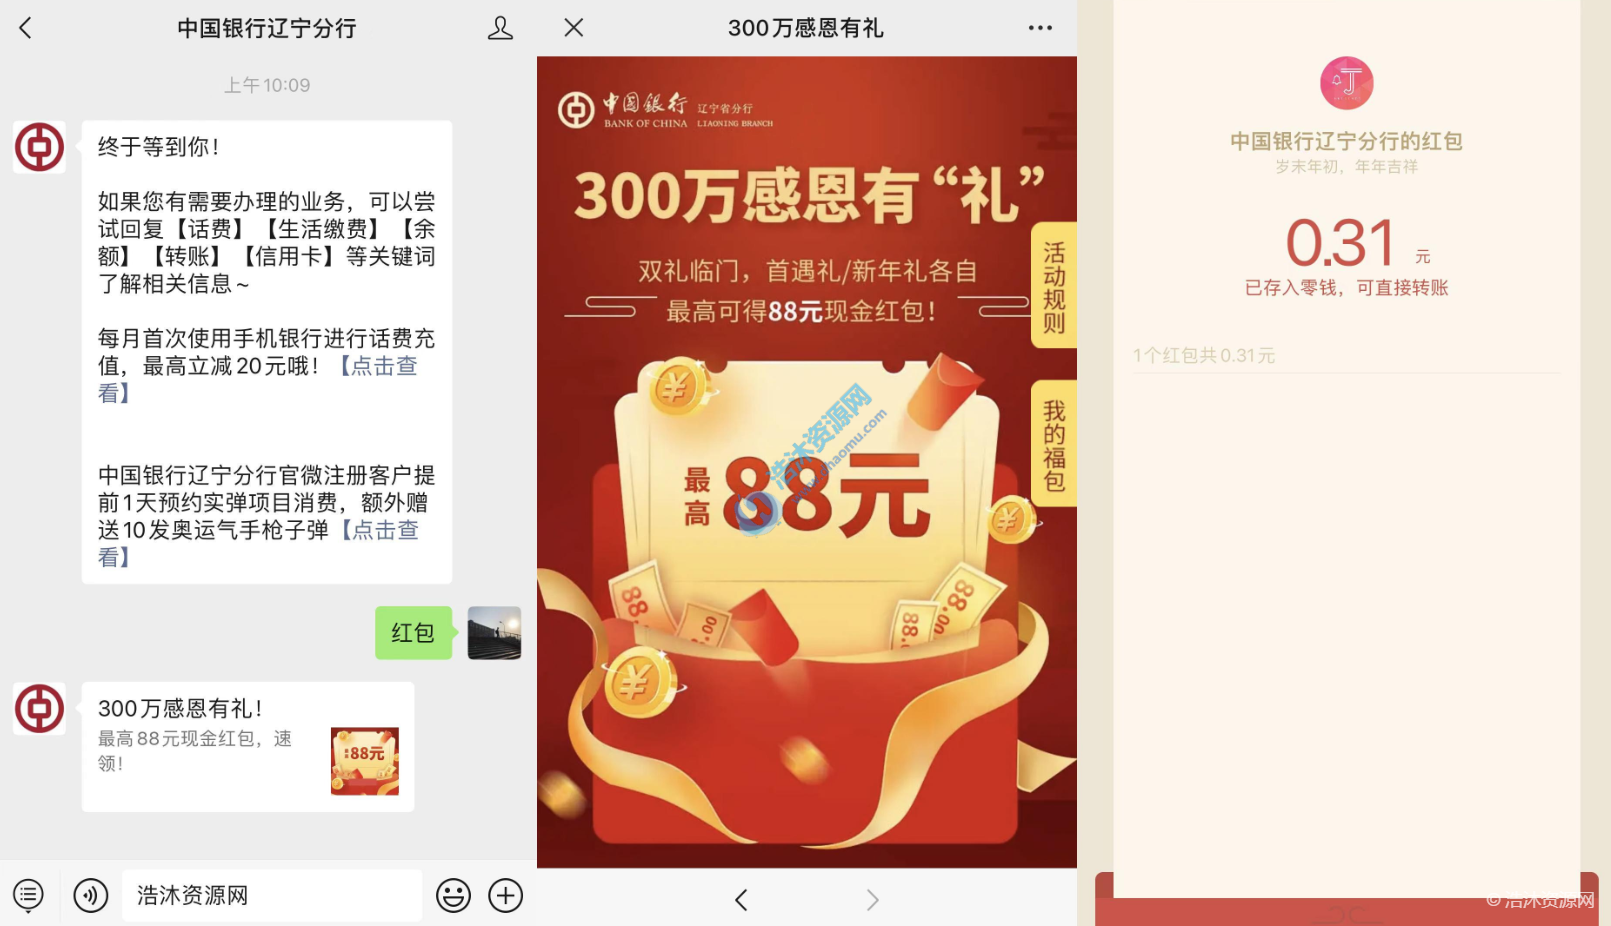 中国银行辽宁分行微信公众号免费抽取微信现金红包，最高88元